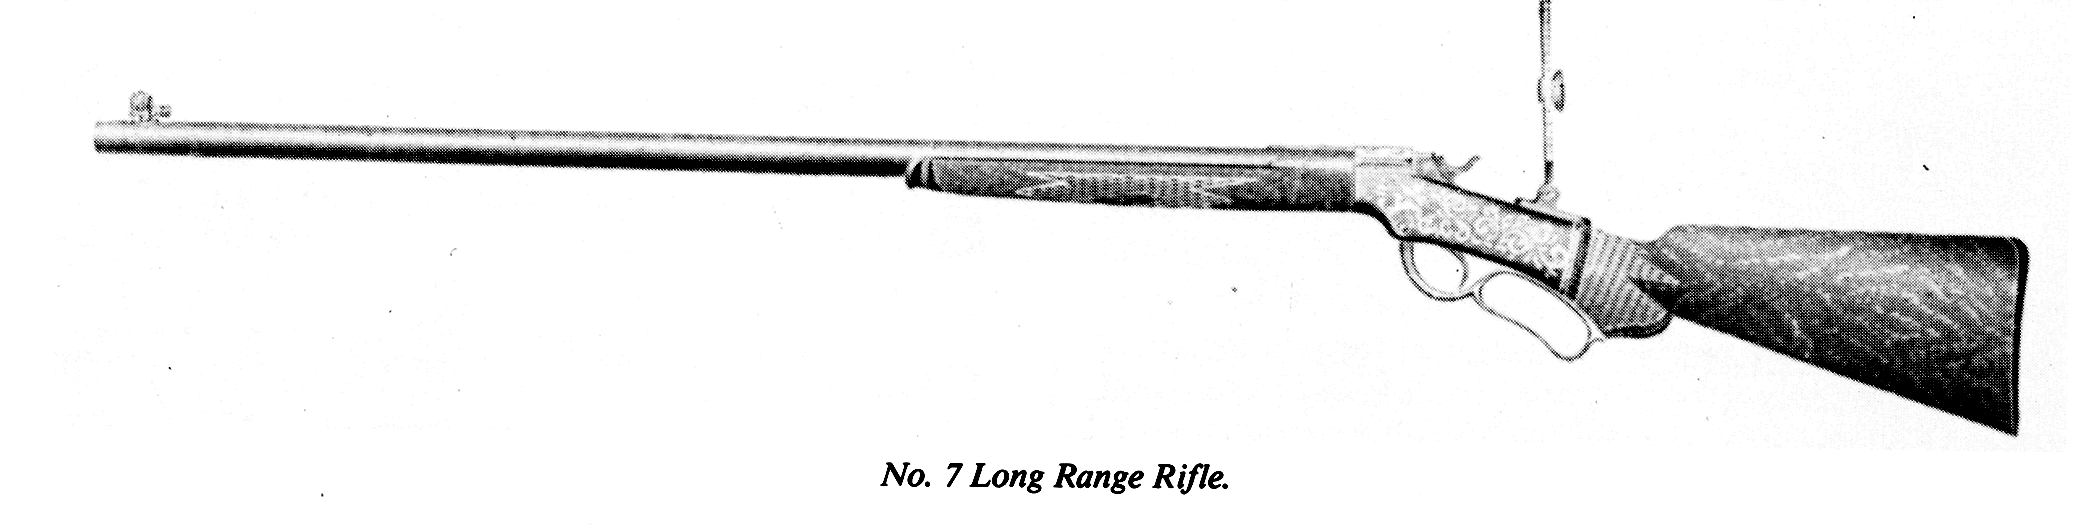 Ballard No. 7 Long Range Rifle